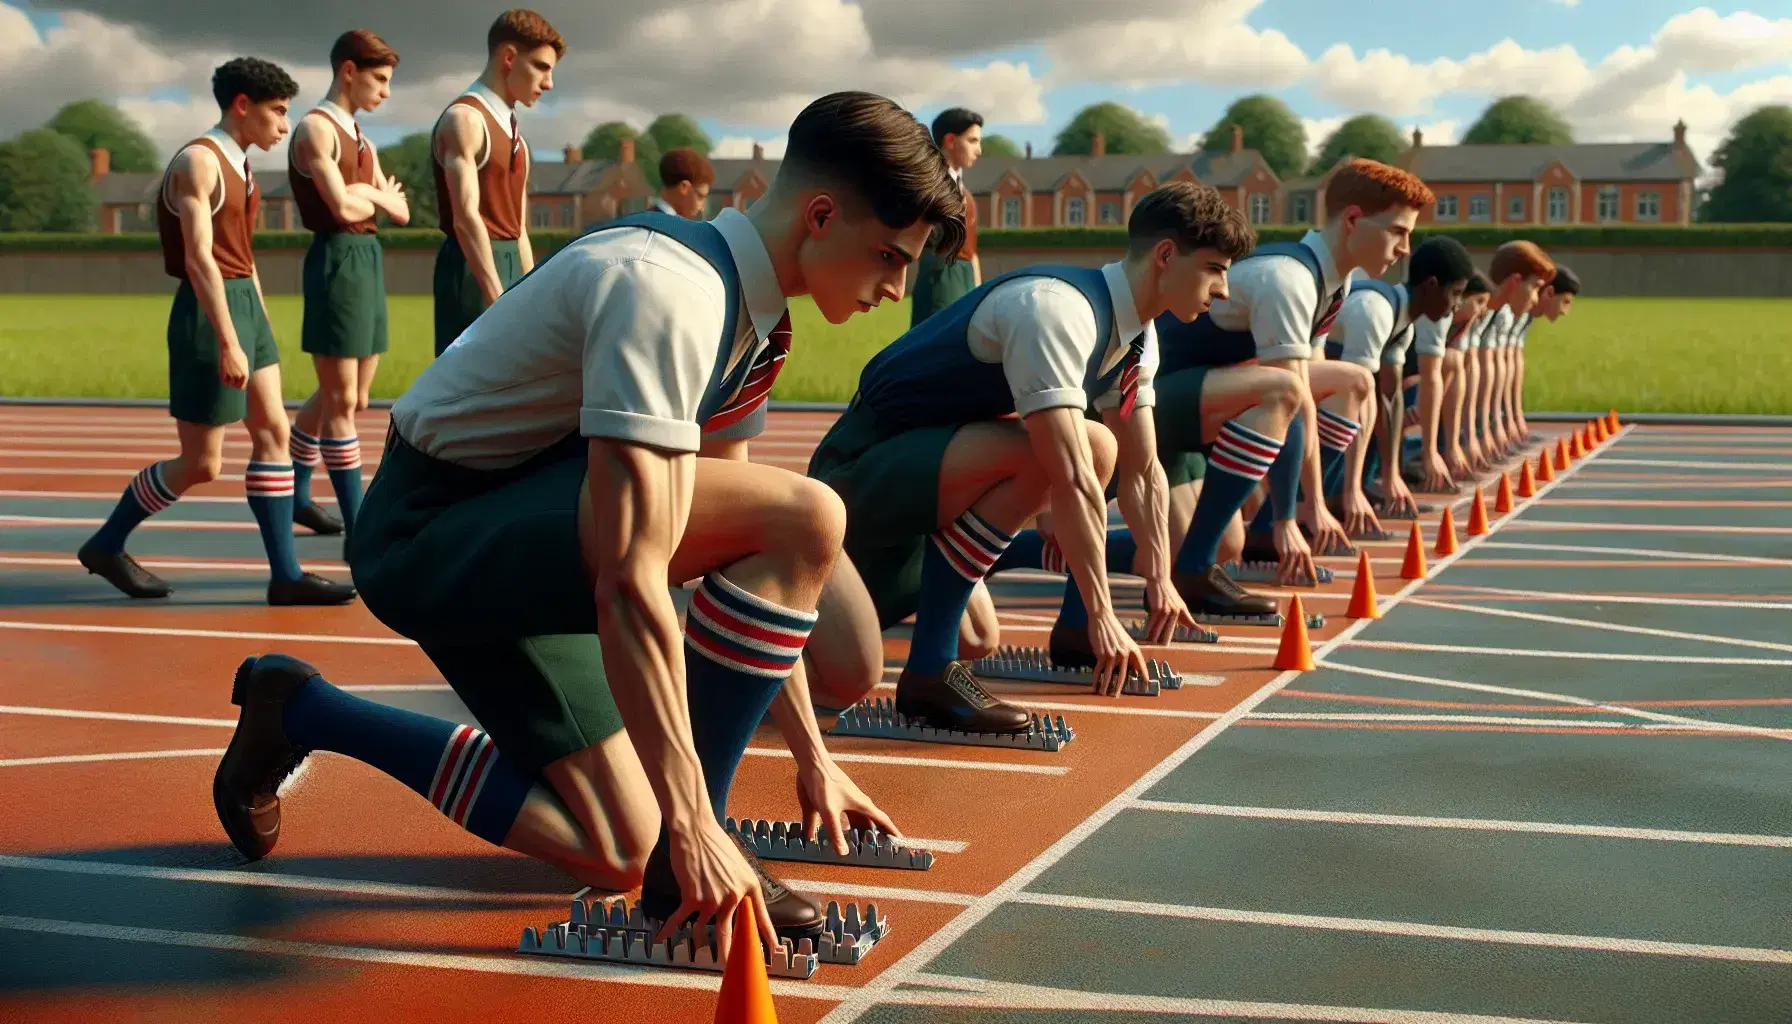 Estudiantes uniformados preparándose para una carrera en pista de atletismo al aire libre, con enfoque en un joven en posición de salida y otros calentando.